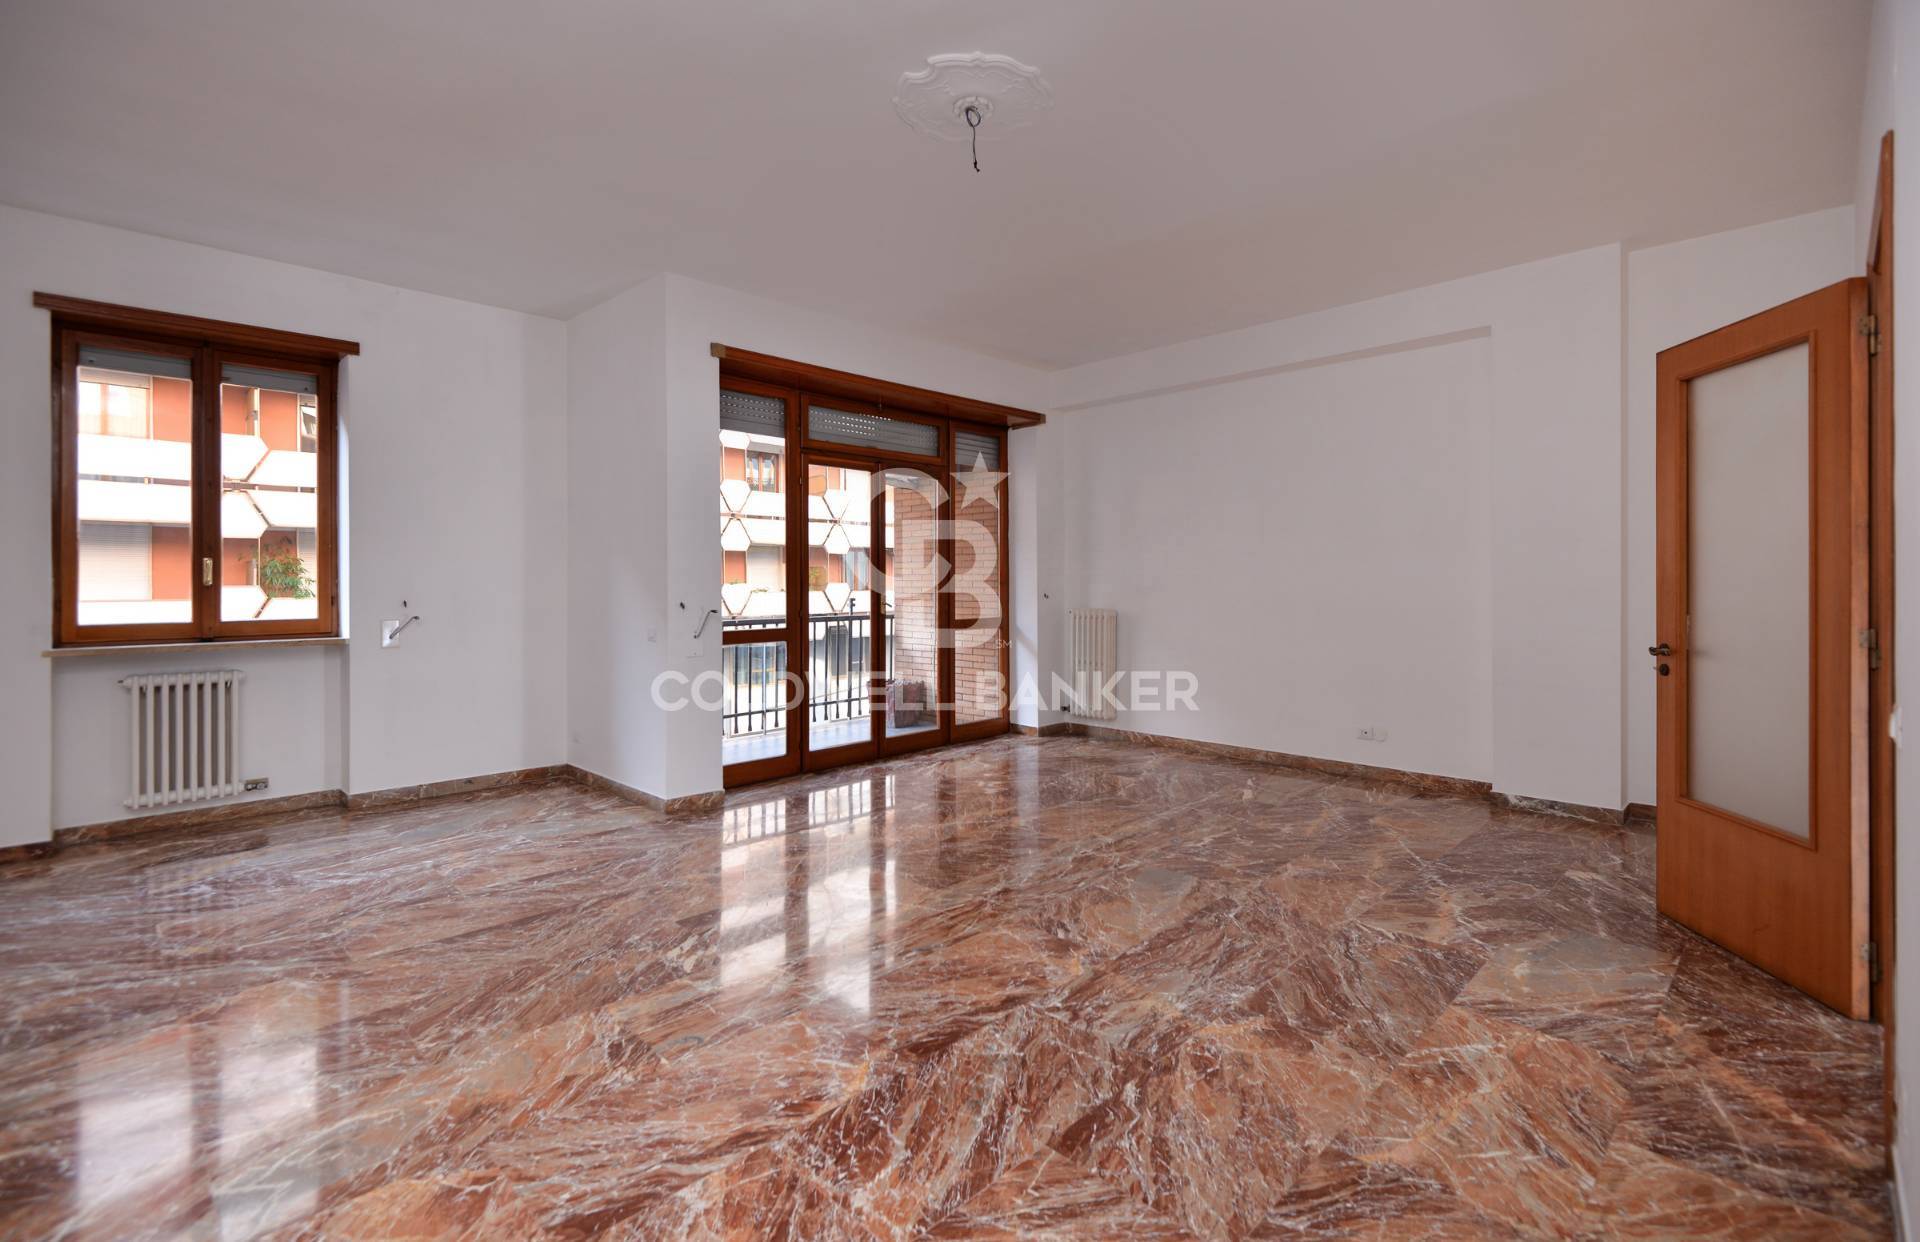 Appartamento, 162 Mq, Affitto - Lecce (Lecce)